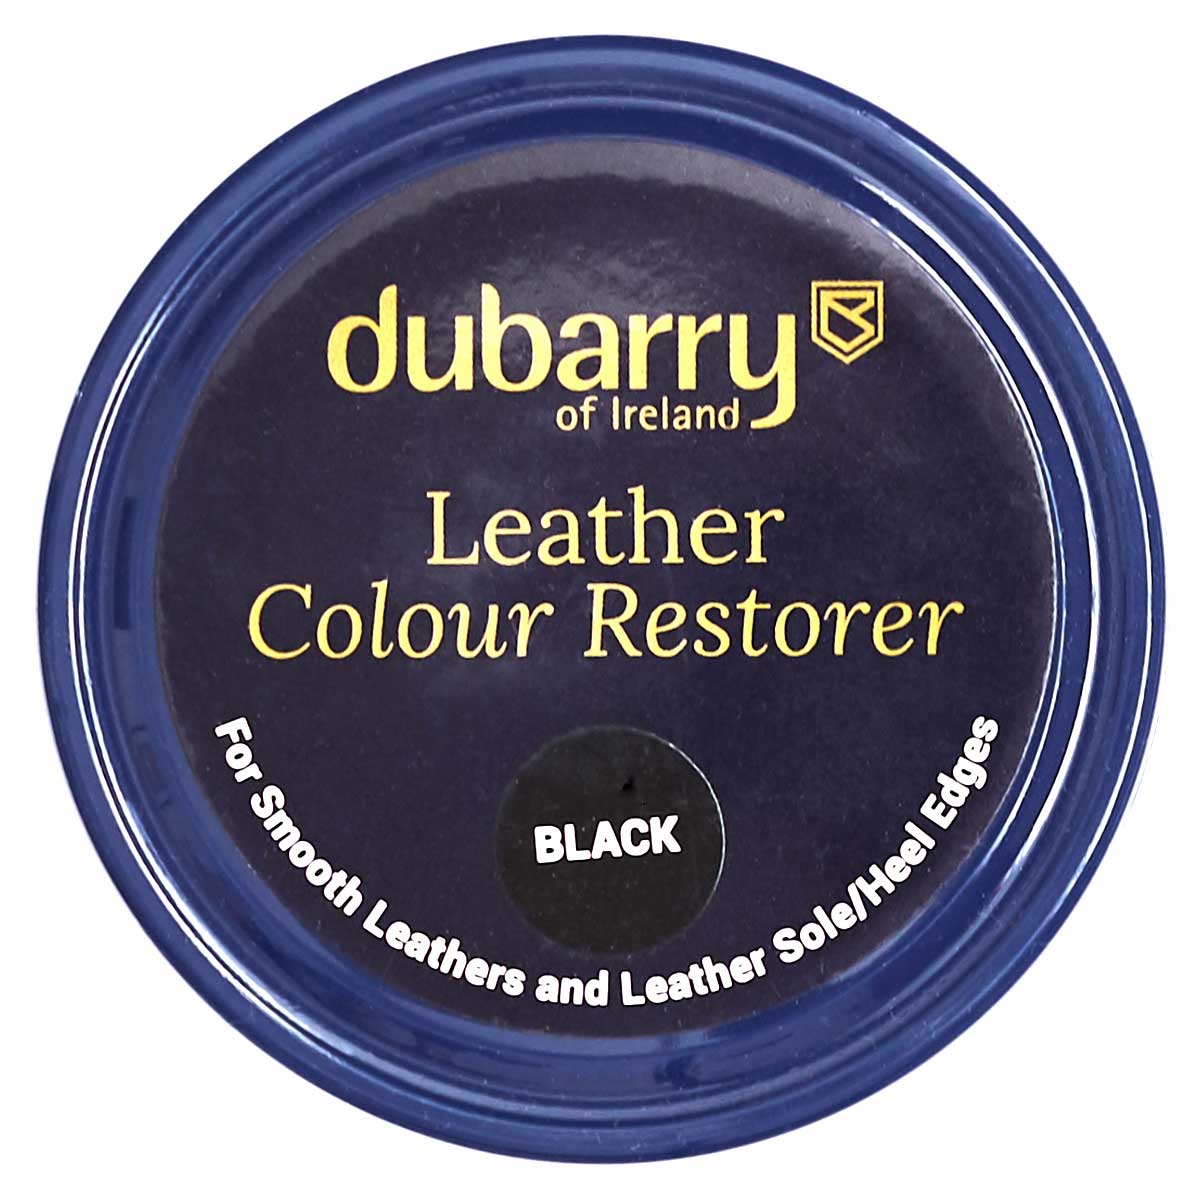 DUBARRY Leather Colour Restorer - 3 Colour Options